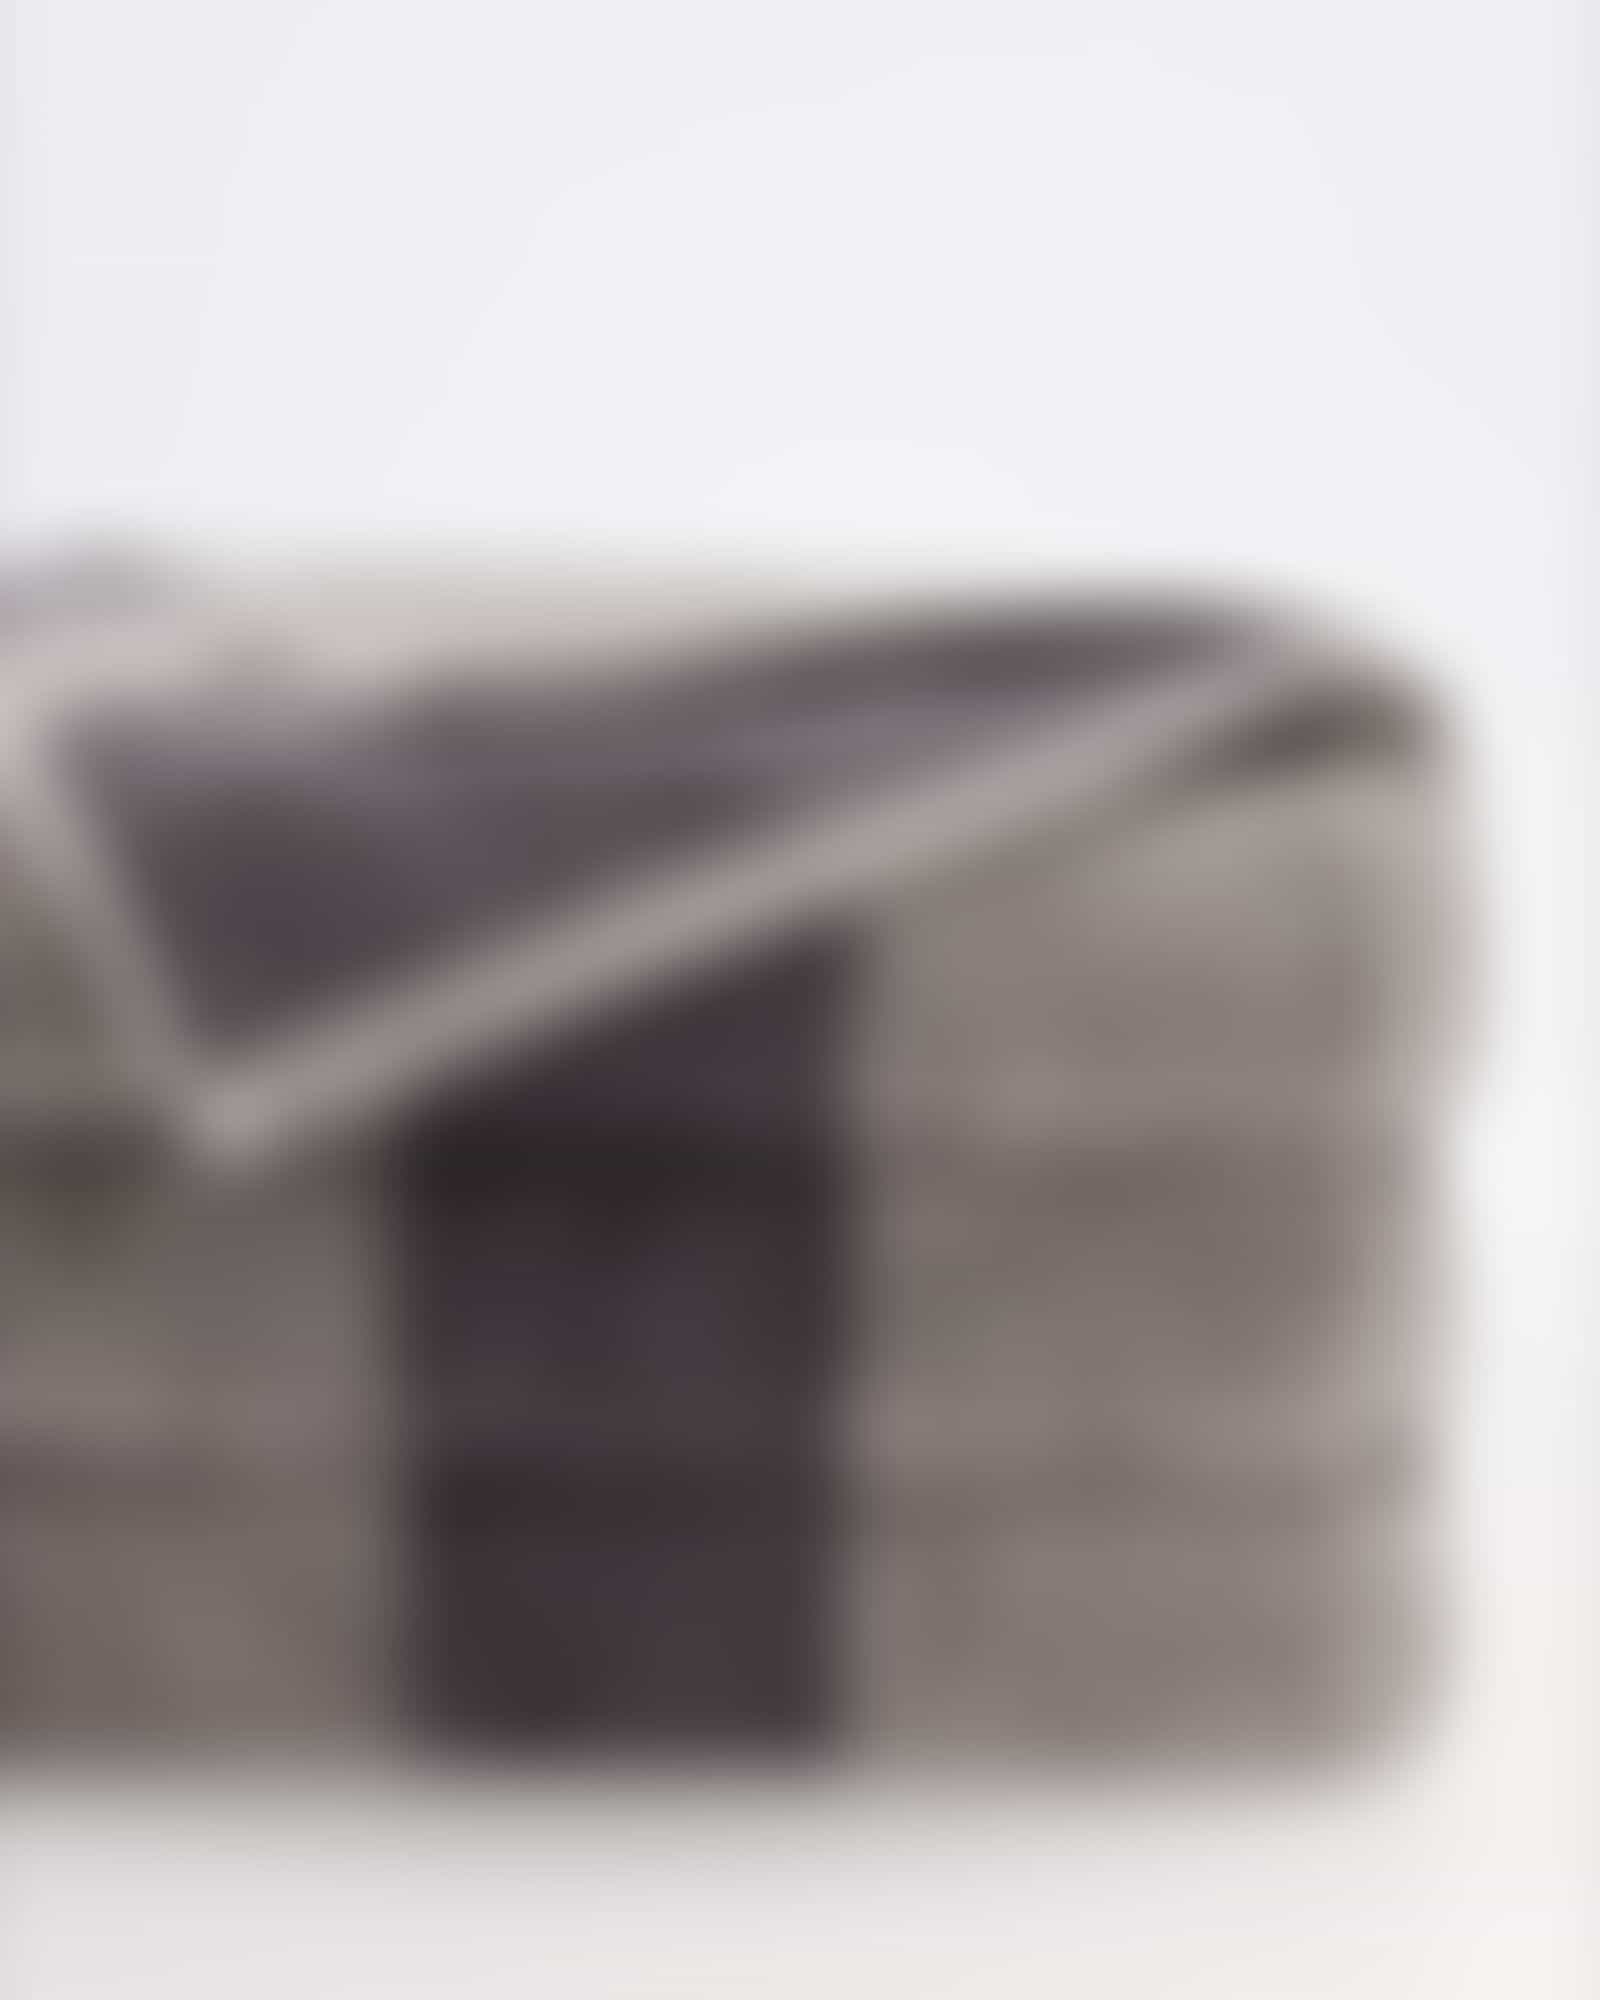 JOOP Shades Stripe 1687 - Farbe: platin - 77 - Waschhandschuh 16x22 cm